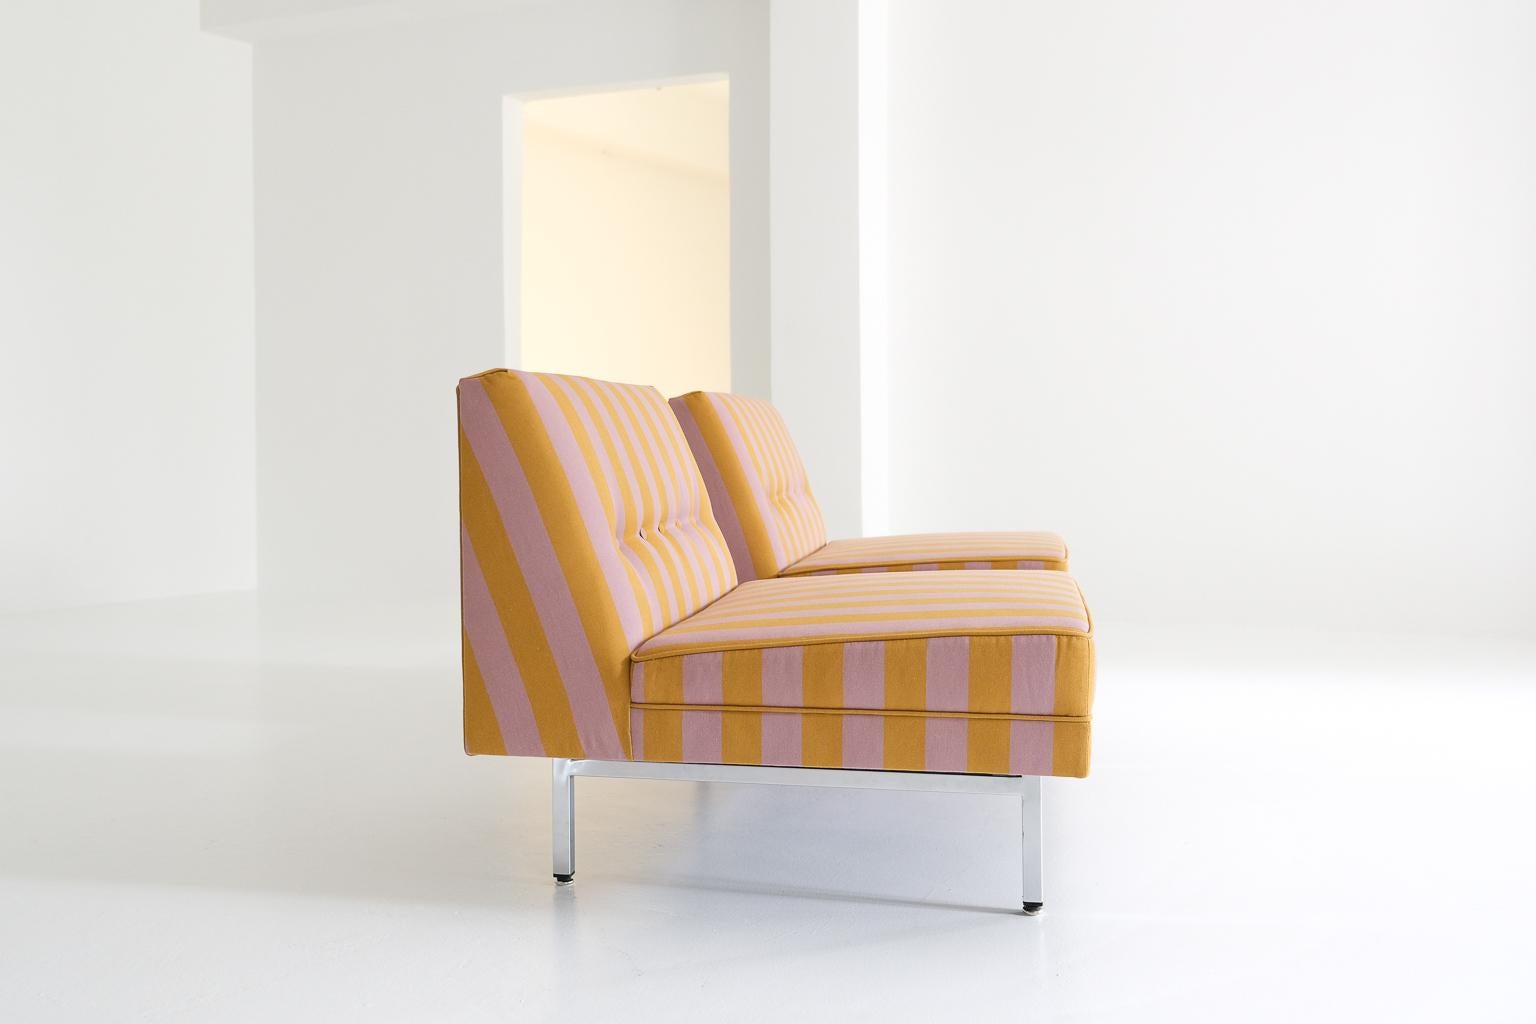 Modular Sofa Seating, Gerogen Nelson for Herman Miller, covered in Dedar fabric For Sale 2